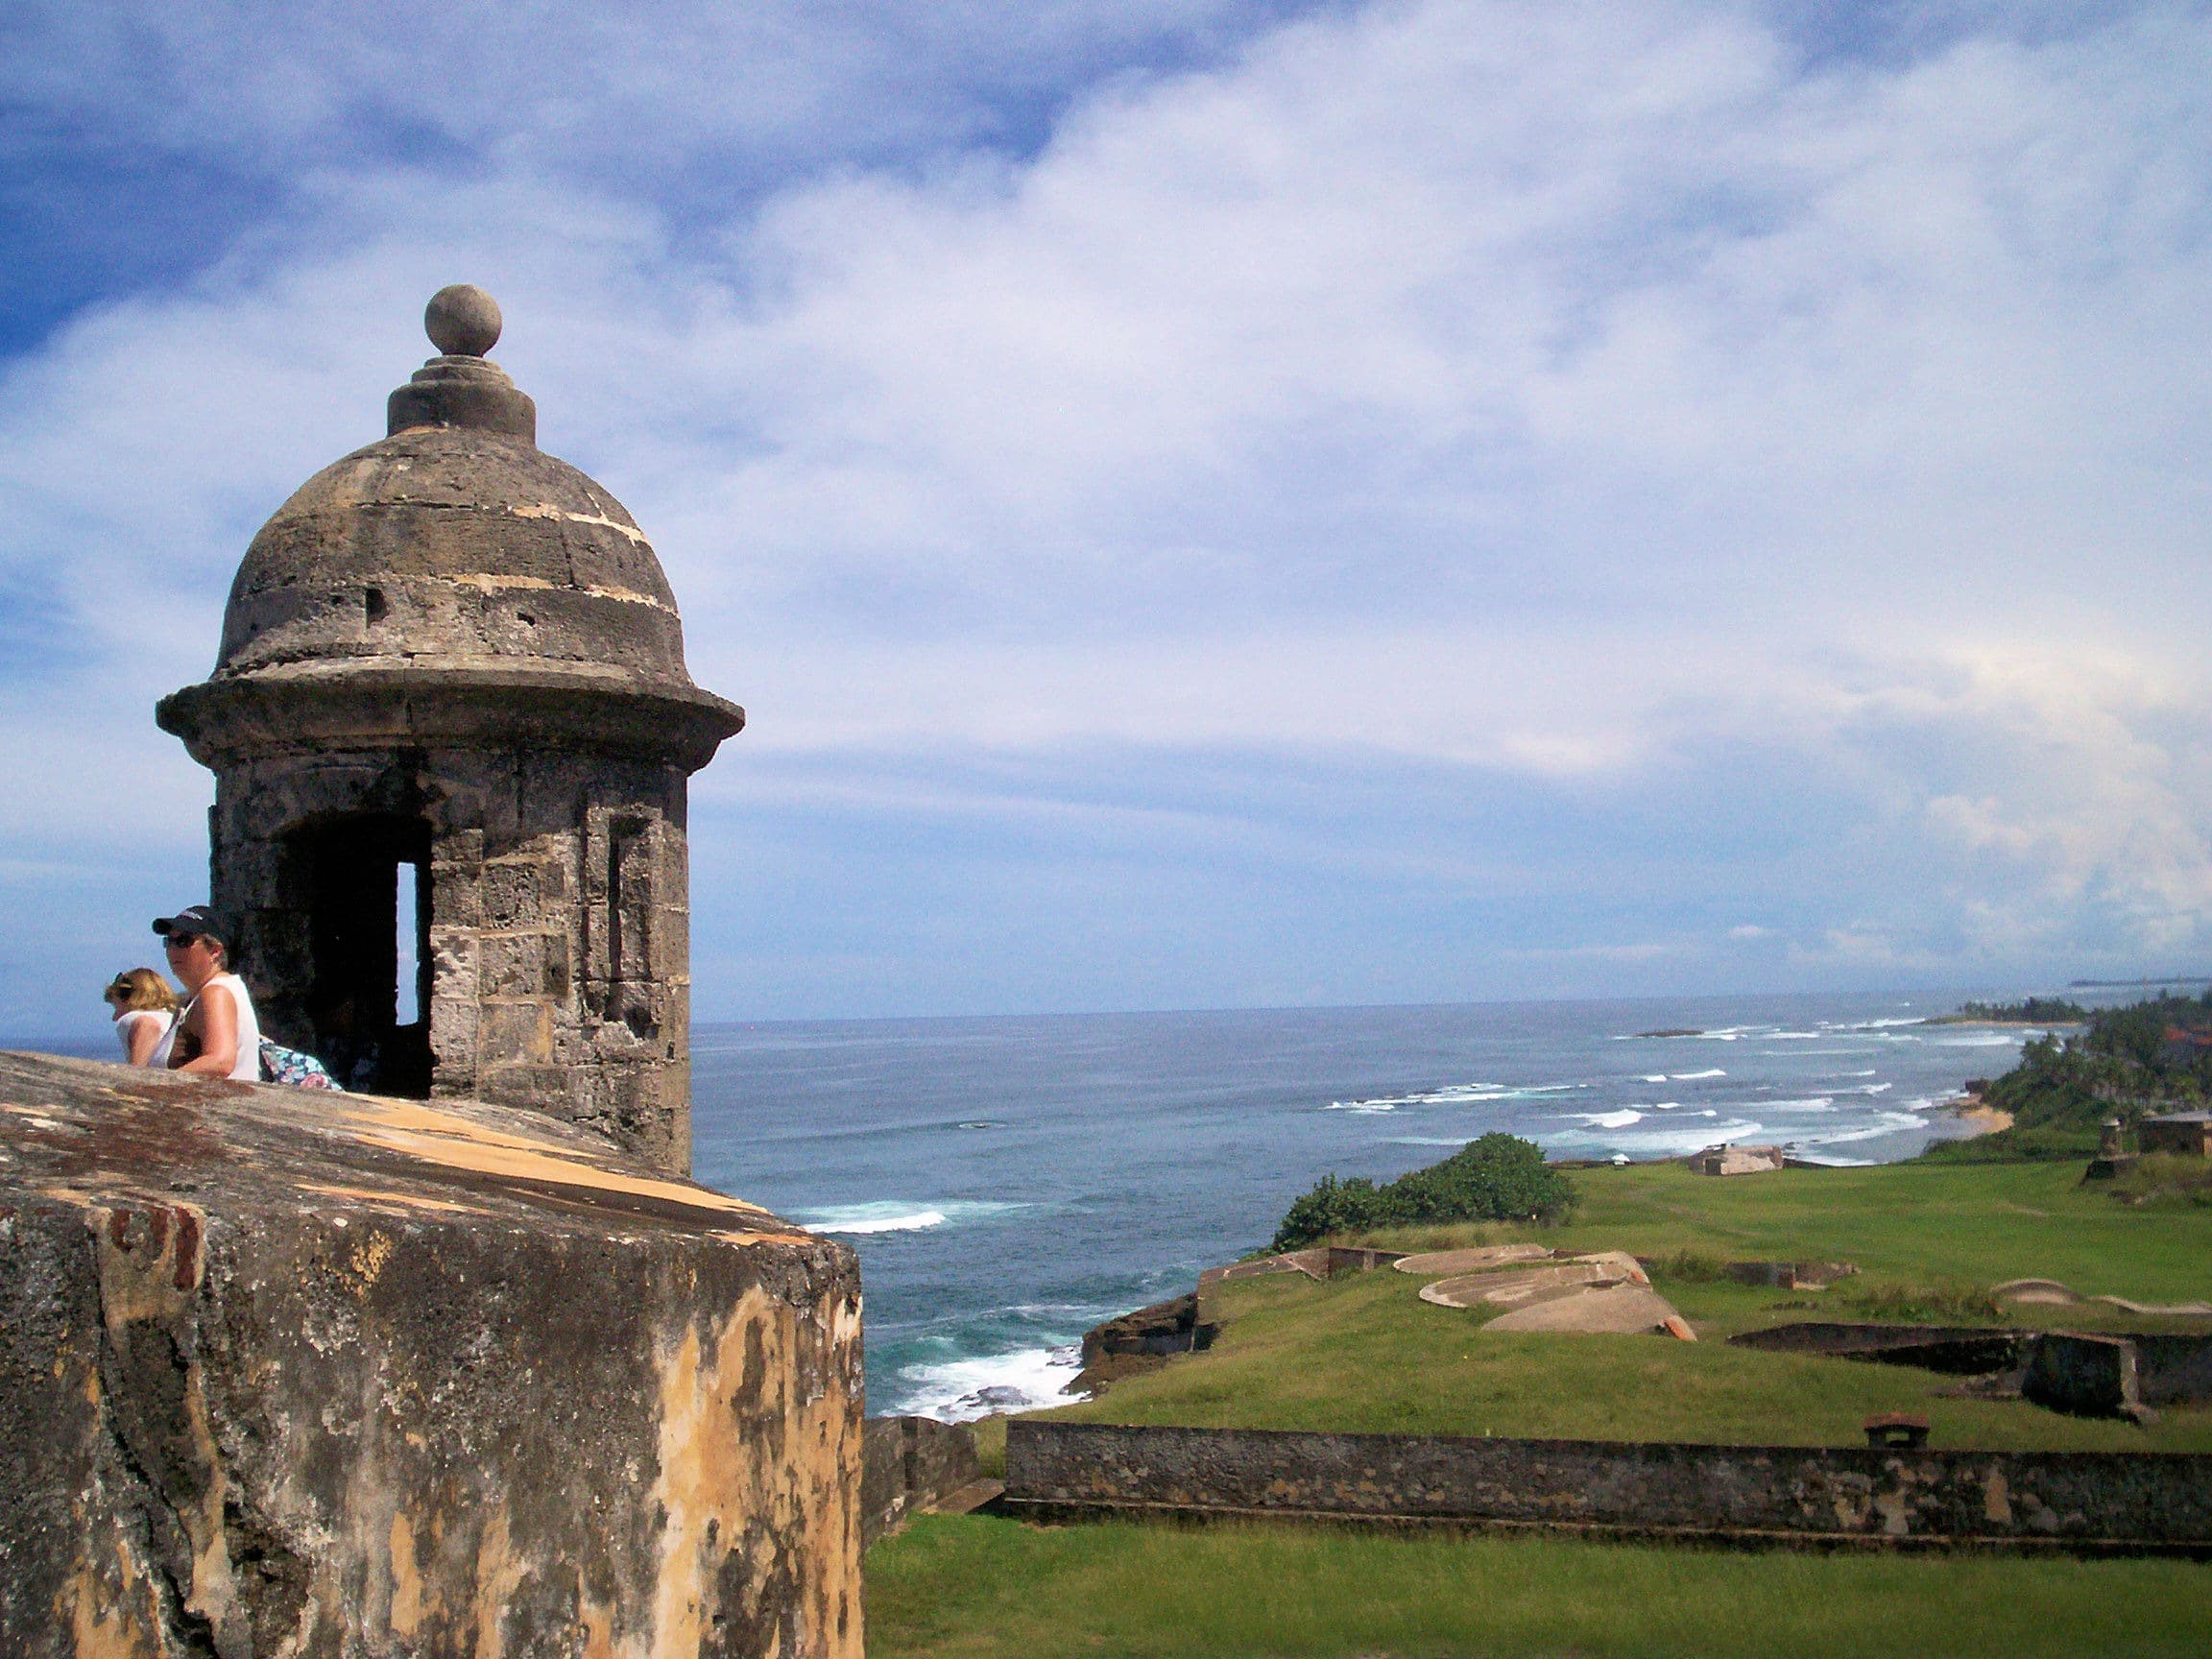 El Morro in Old San Juan, Puerto Rico